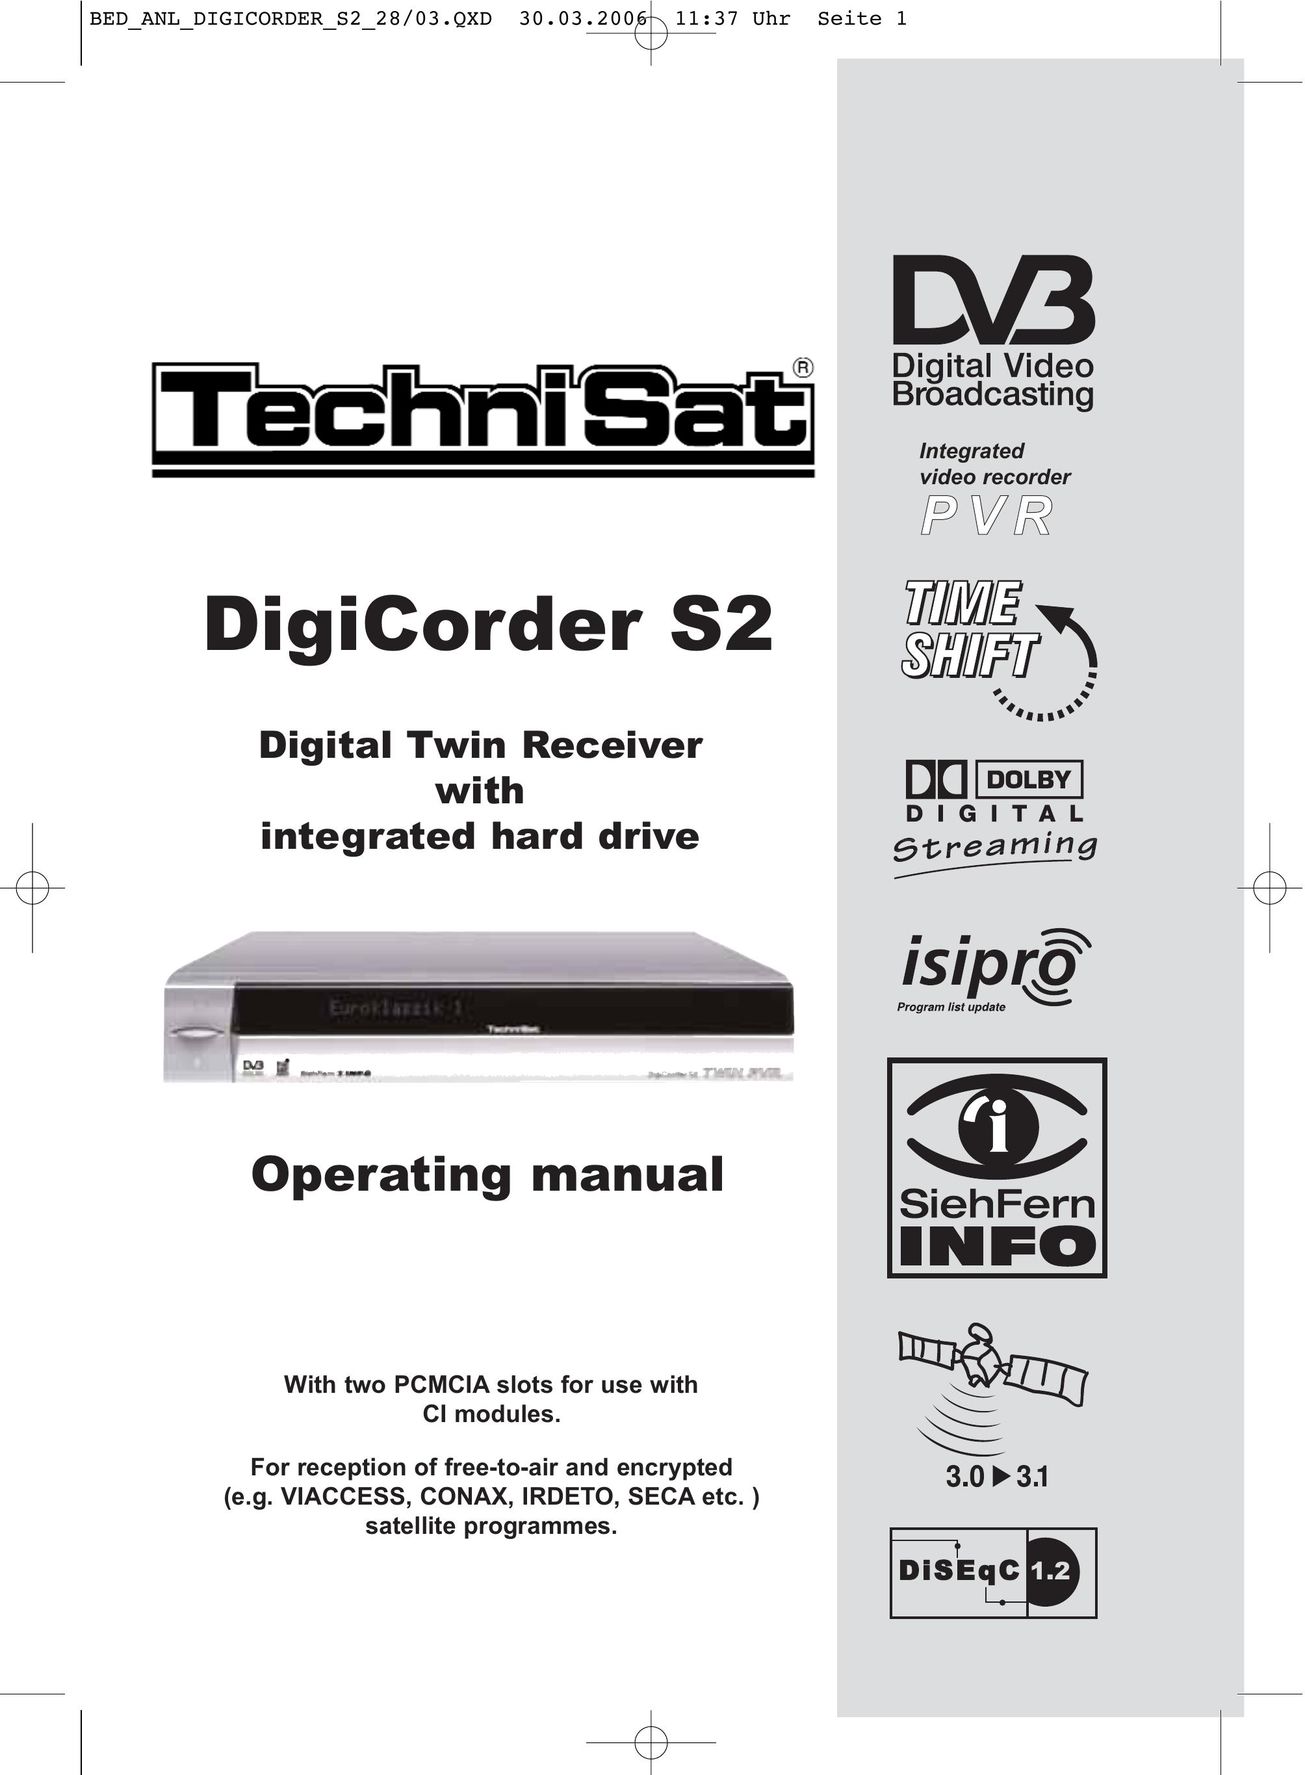 TechniSat DigiCorder S2 DVD Recorder User Manual